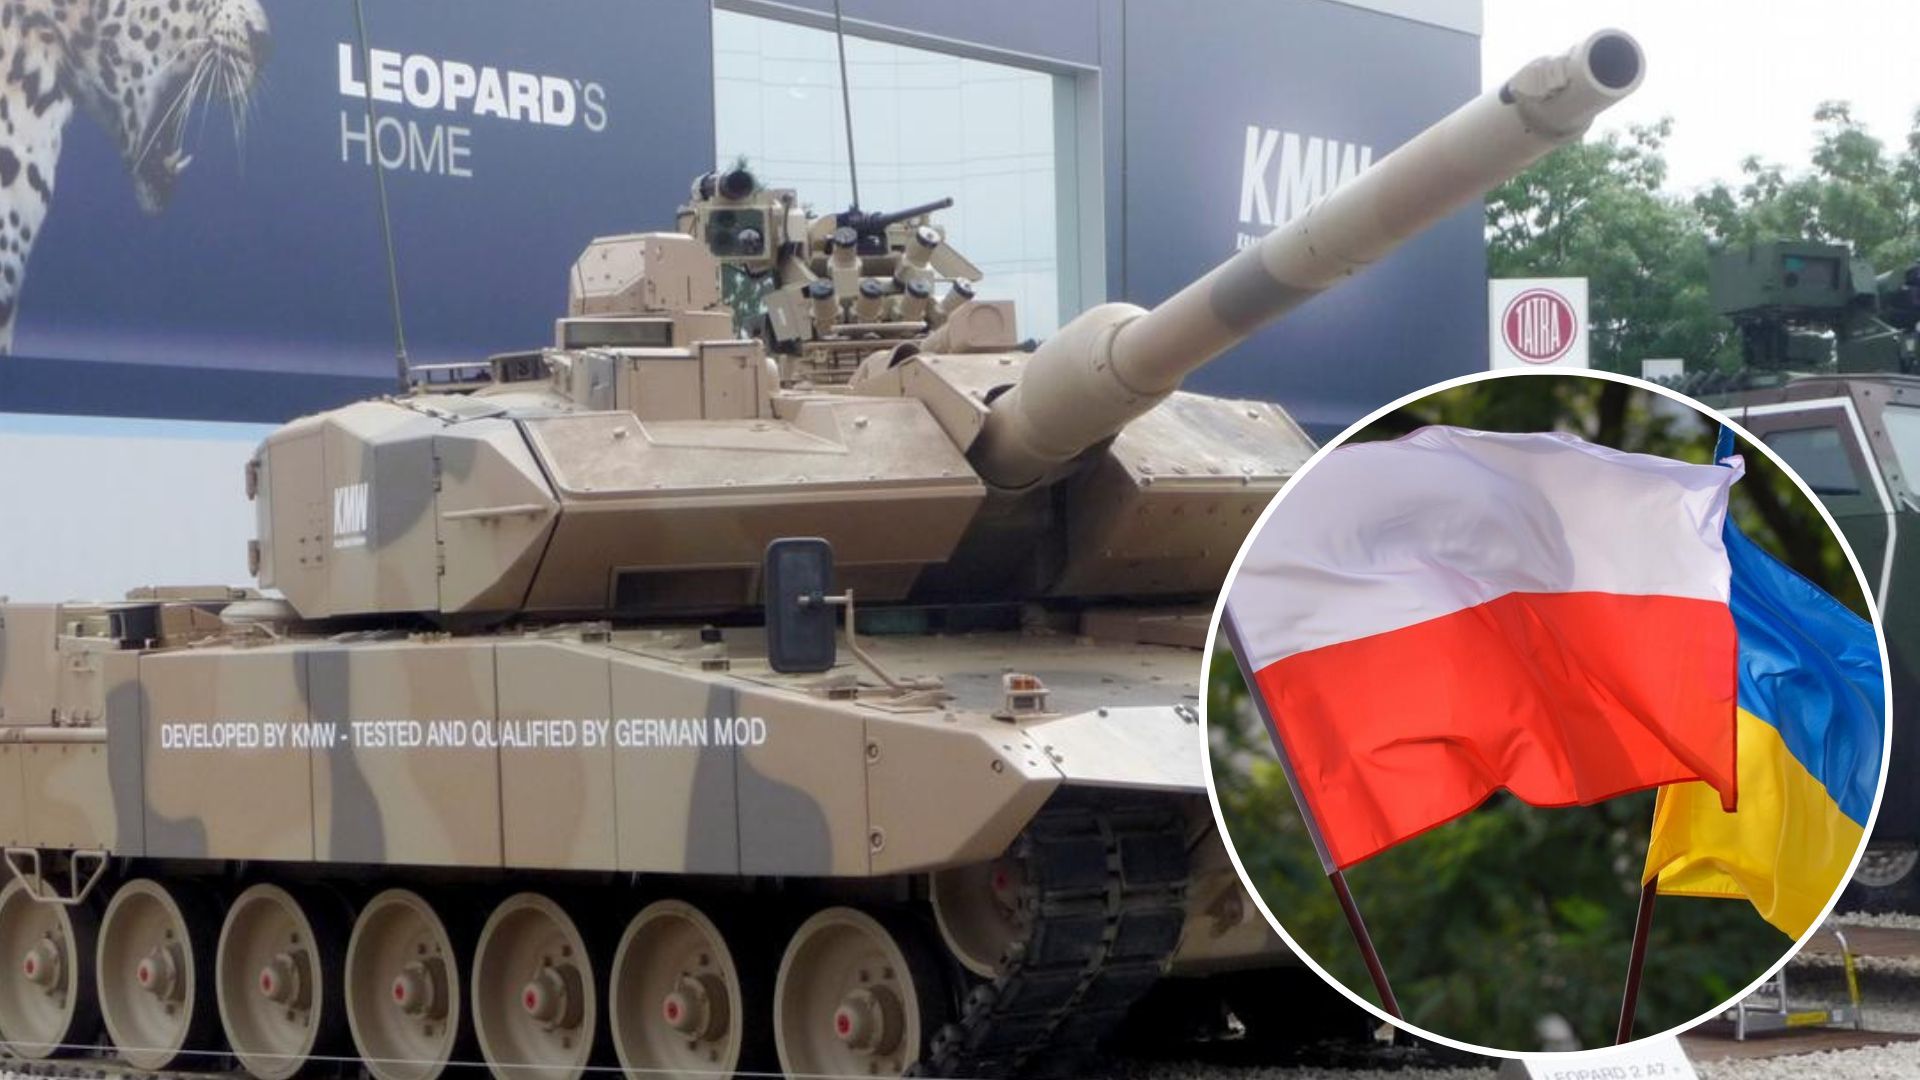 Leopard для України - Польща відправила ще 10 танків - 24 Канал